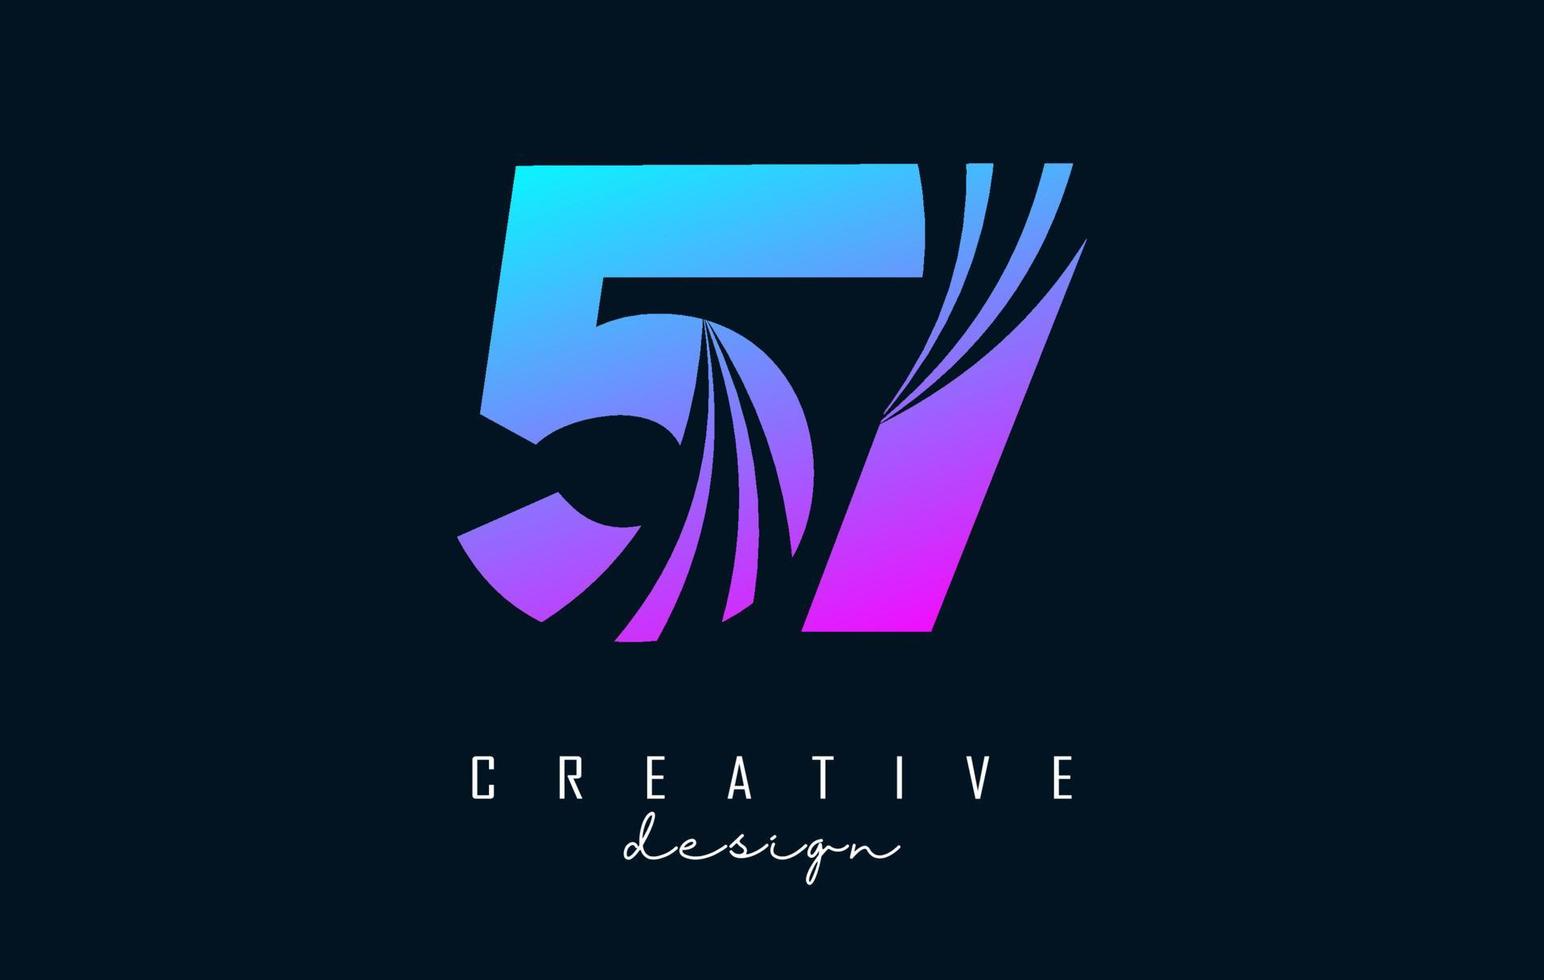 kleurrijk creatief aantal 57 5 7 logo met leidend lijnen en weg concept ontwerp. aantal met meetkundig ontwerp. vector